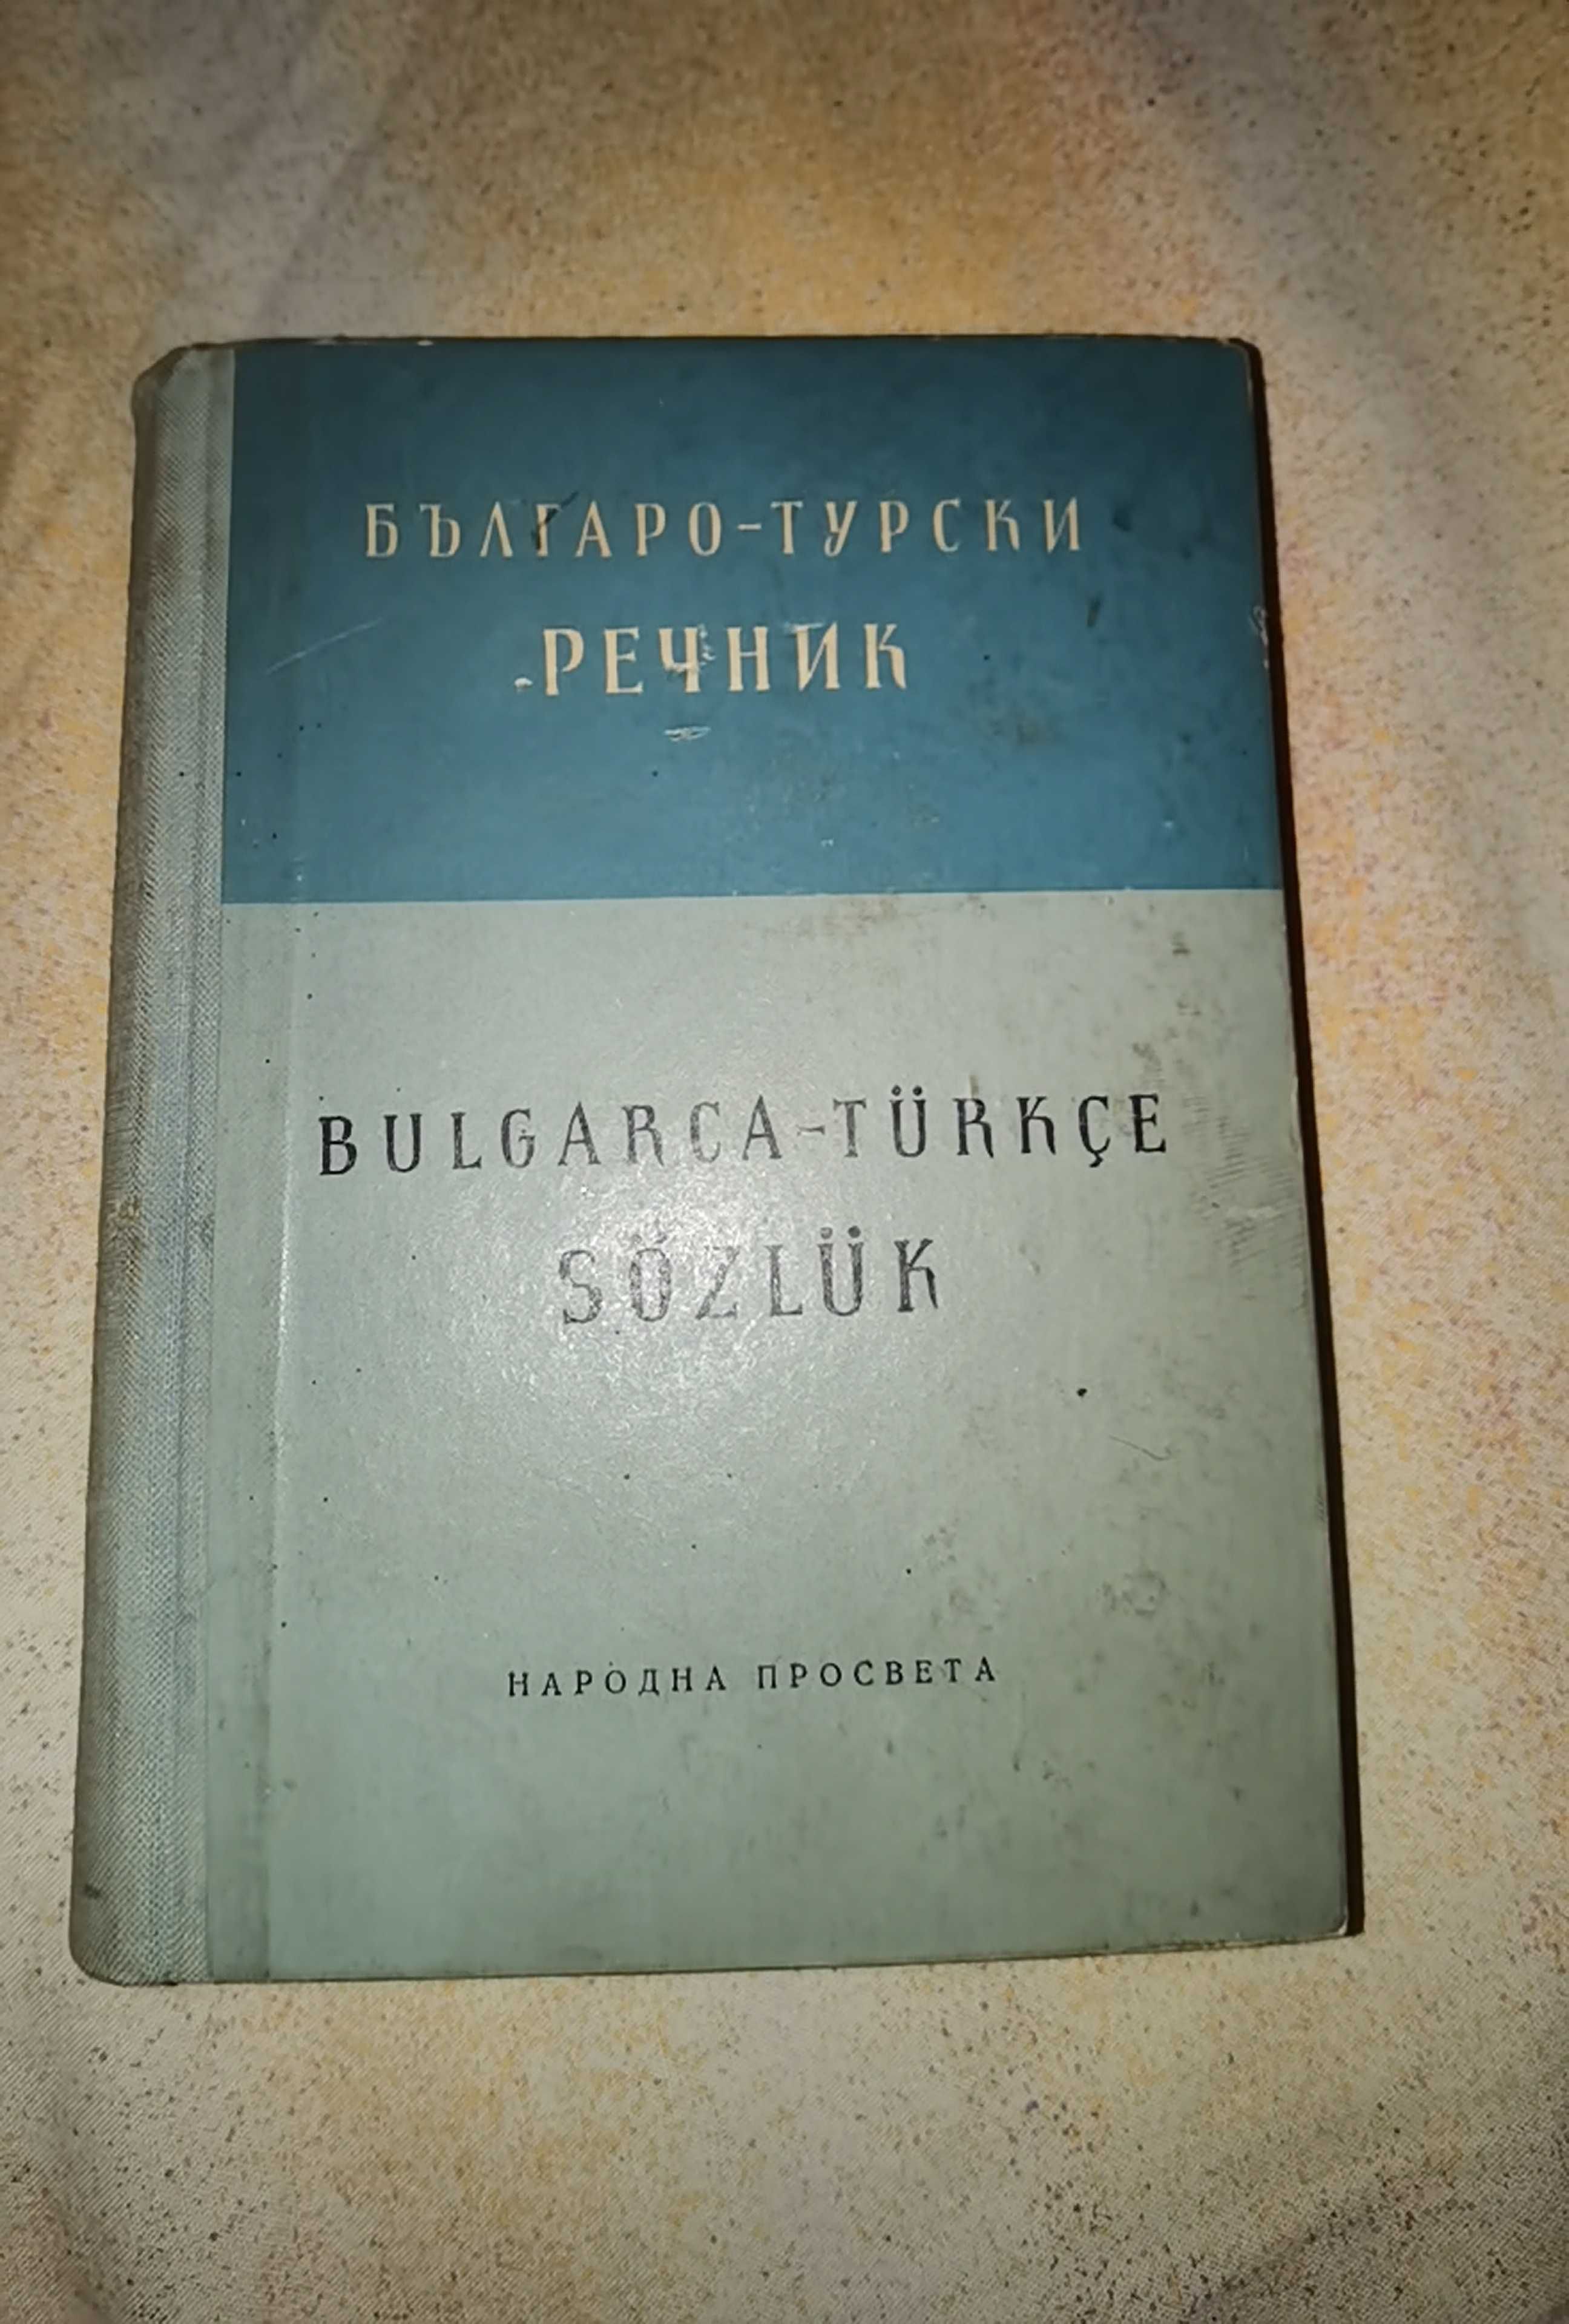 Българо- Турски речник от 1957г.